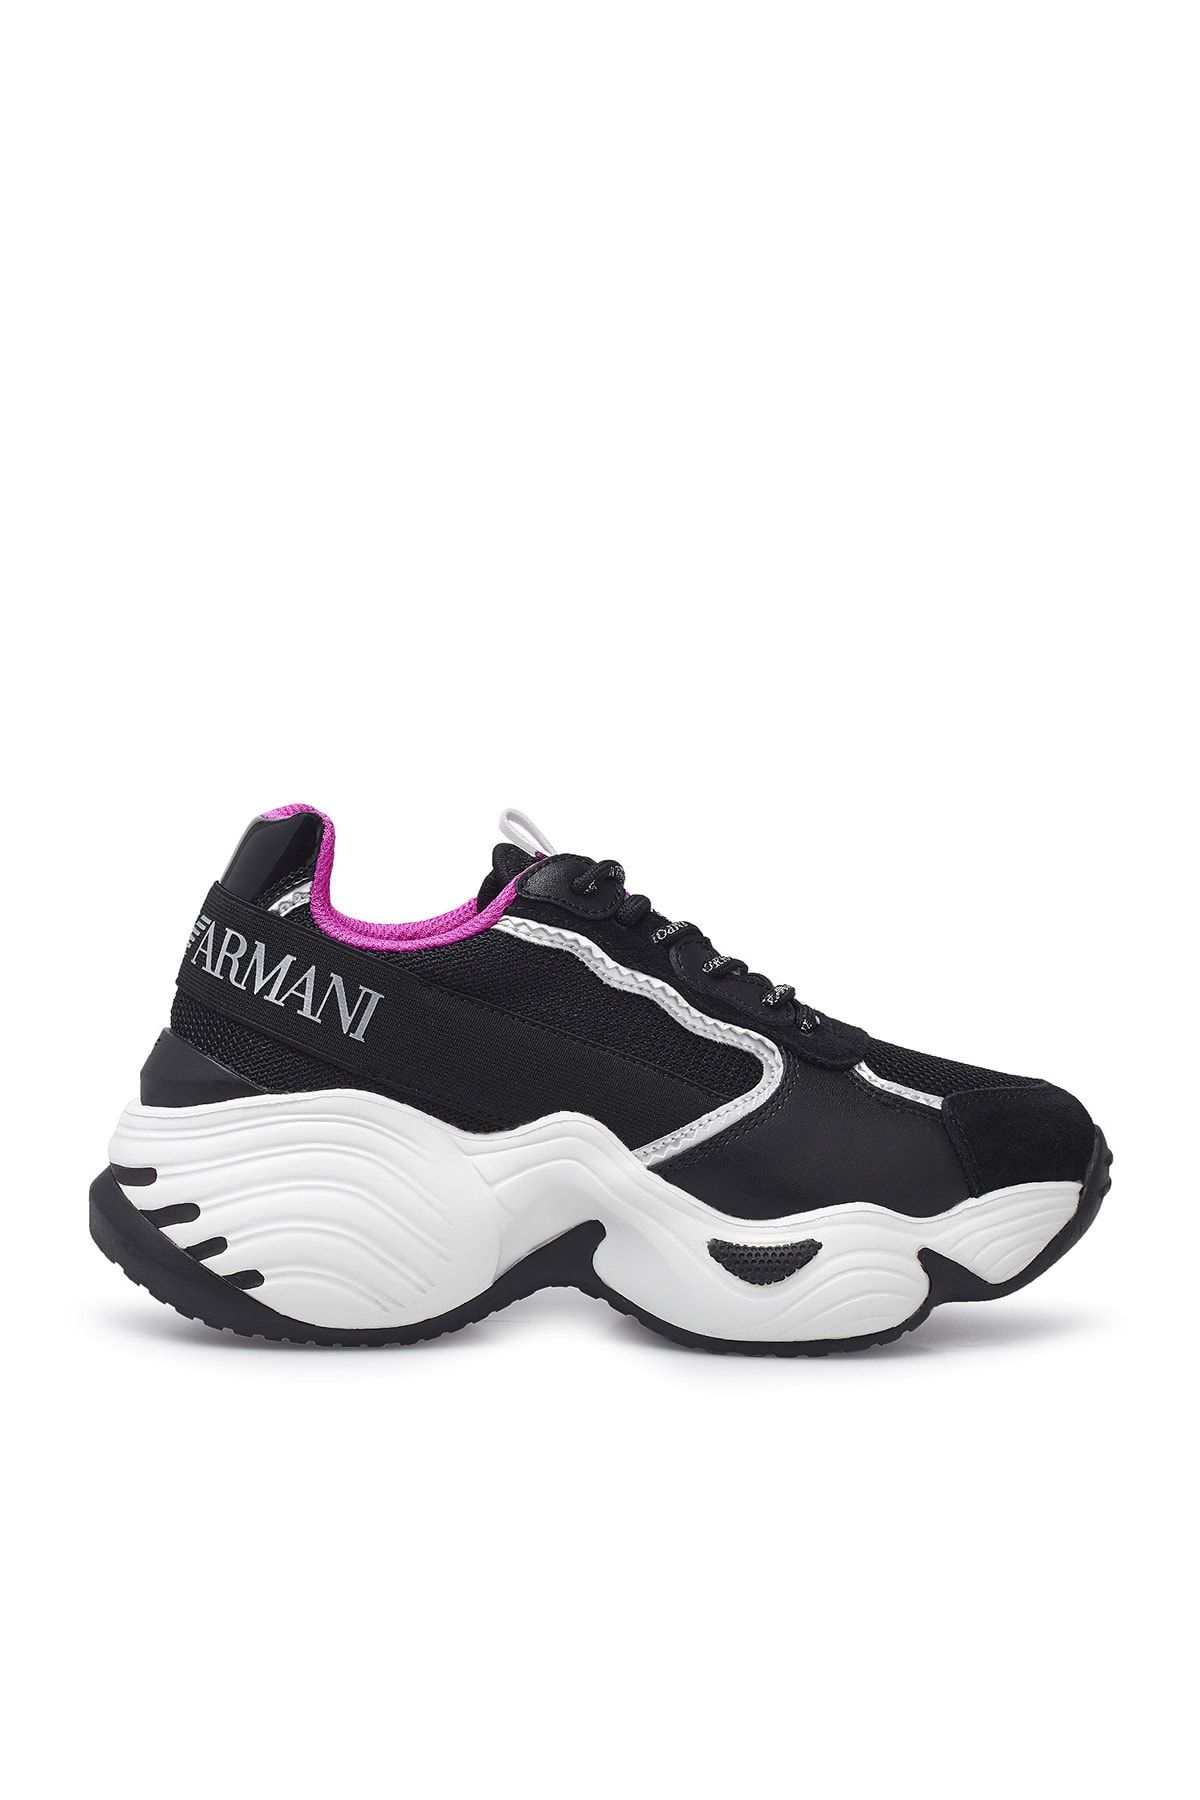 Emporio Armani Kadın Sneaker Ayakkabı S X3x088 Xm059 N102